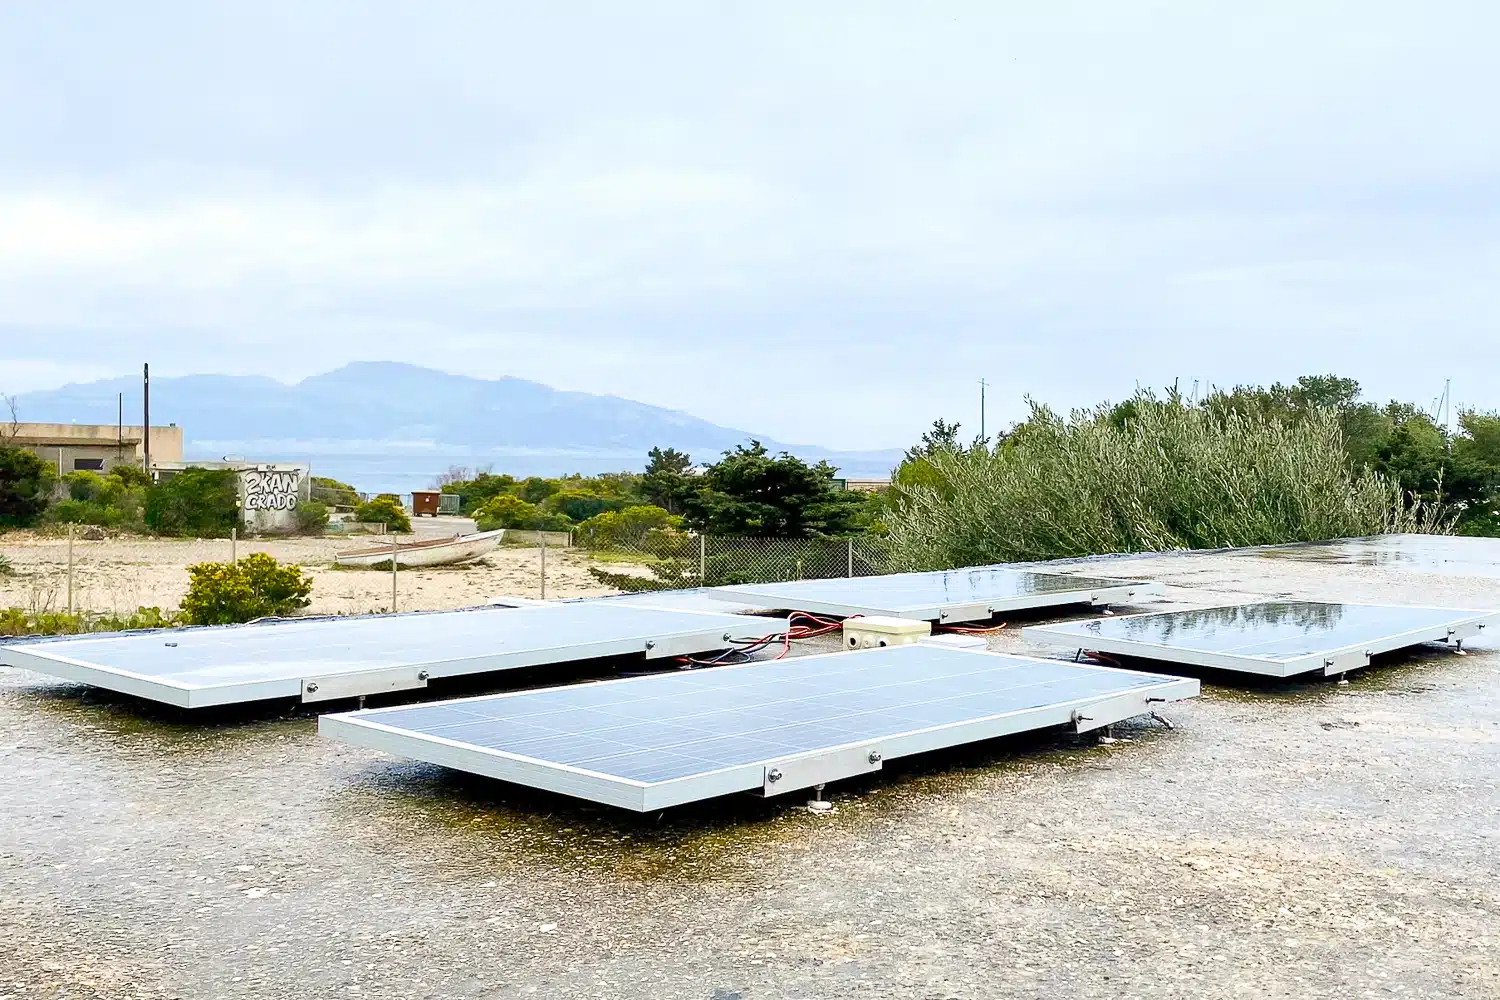 Projet Canopée, À Marseille, le « Projet Canopée » veut couvrir les autoroutes de panneaux solaires, Made in Marseille